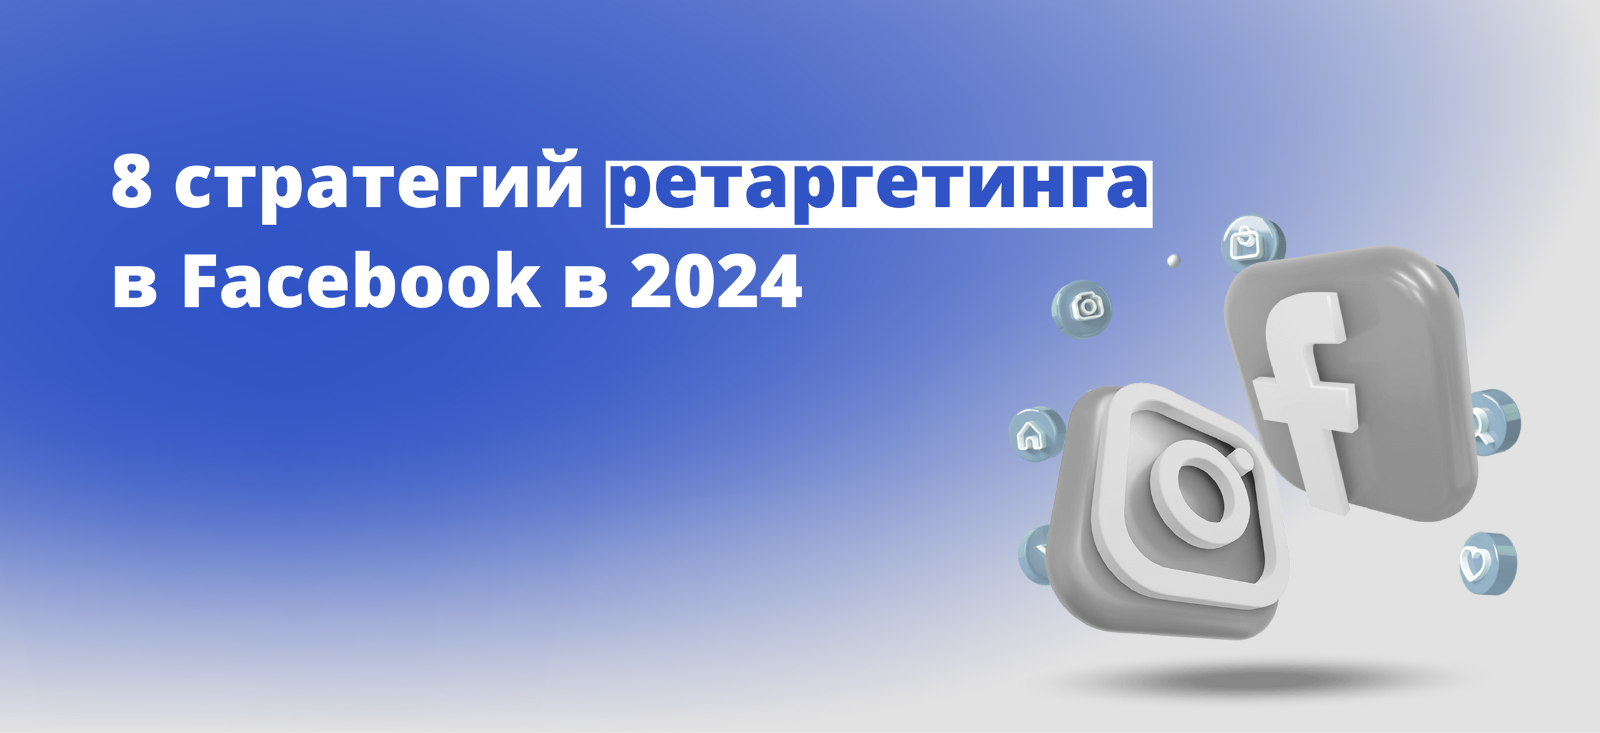 8 стратегий ретаргетинга в Facebook в 2024